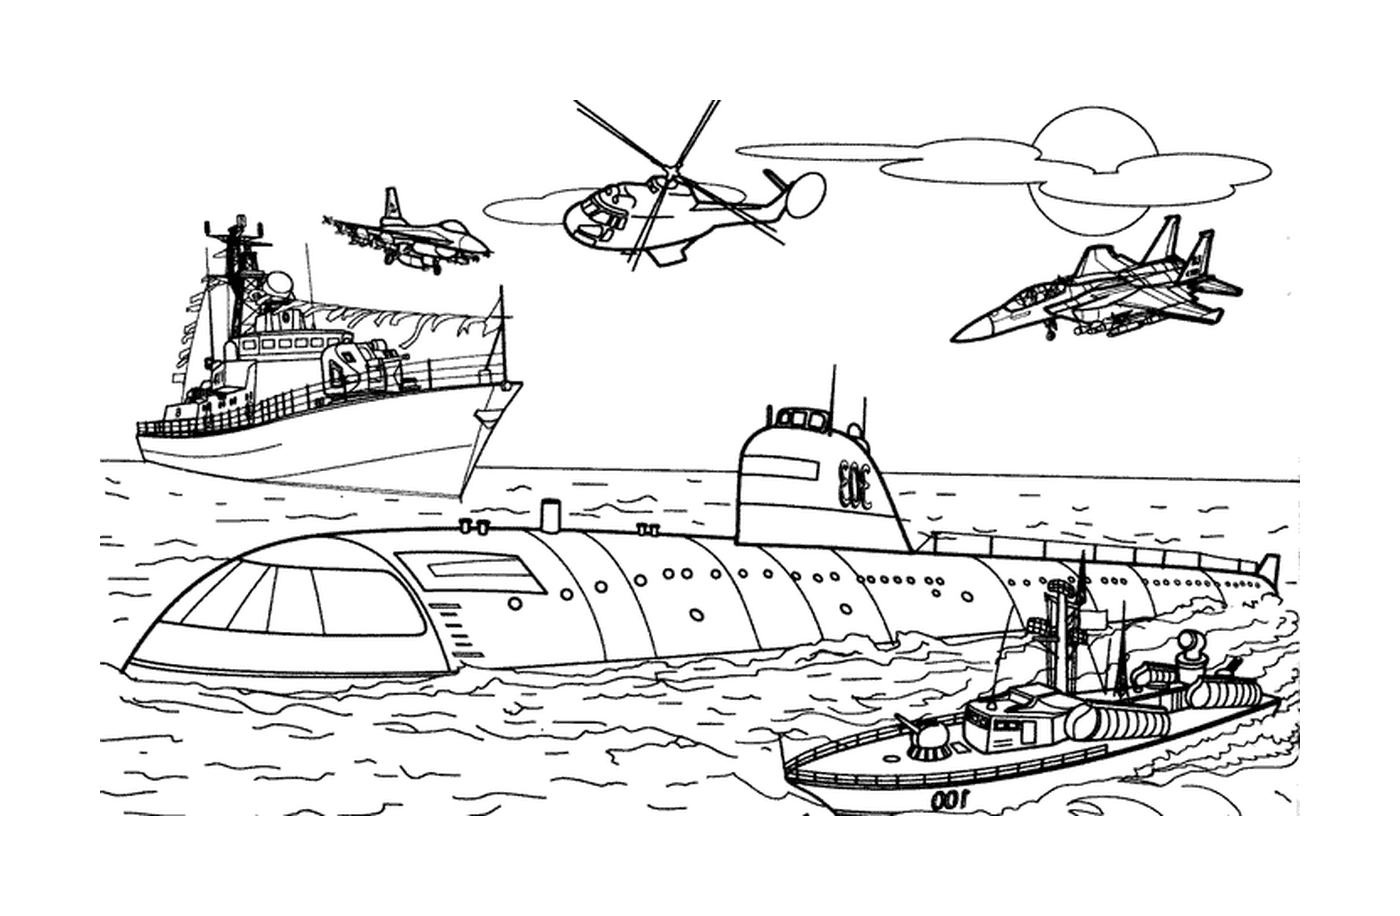  Военный транспорт: катер и вертолет 